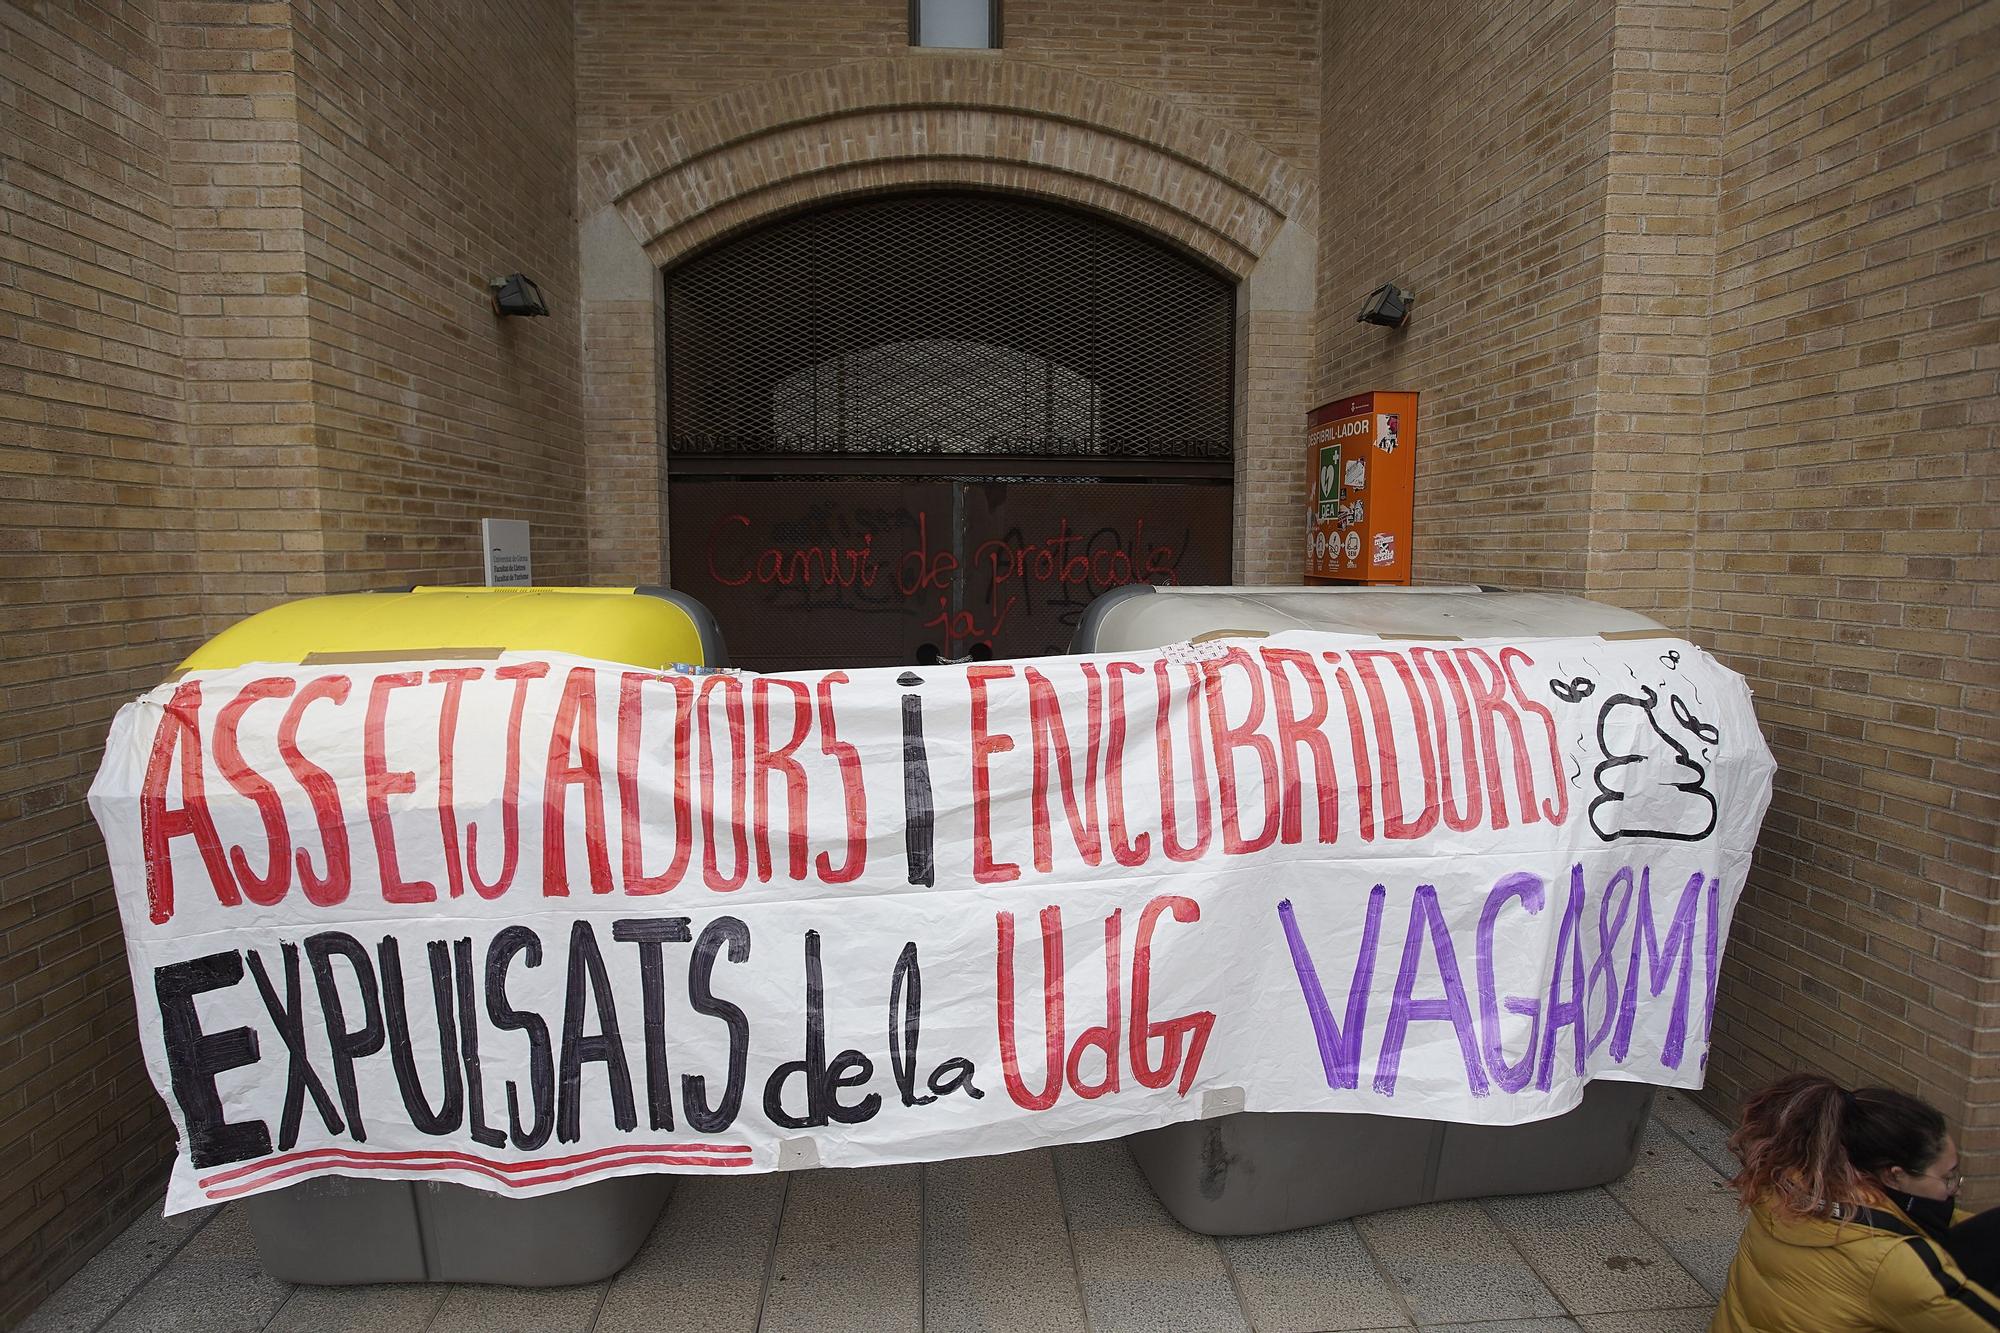 Els piquets per la vaga feminista bloquegen l'entrada al Campus del Barri Vell de la UdG